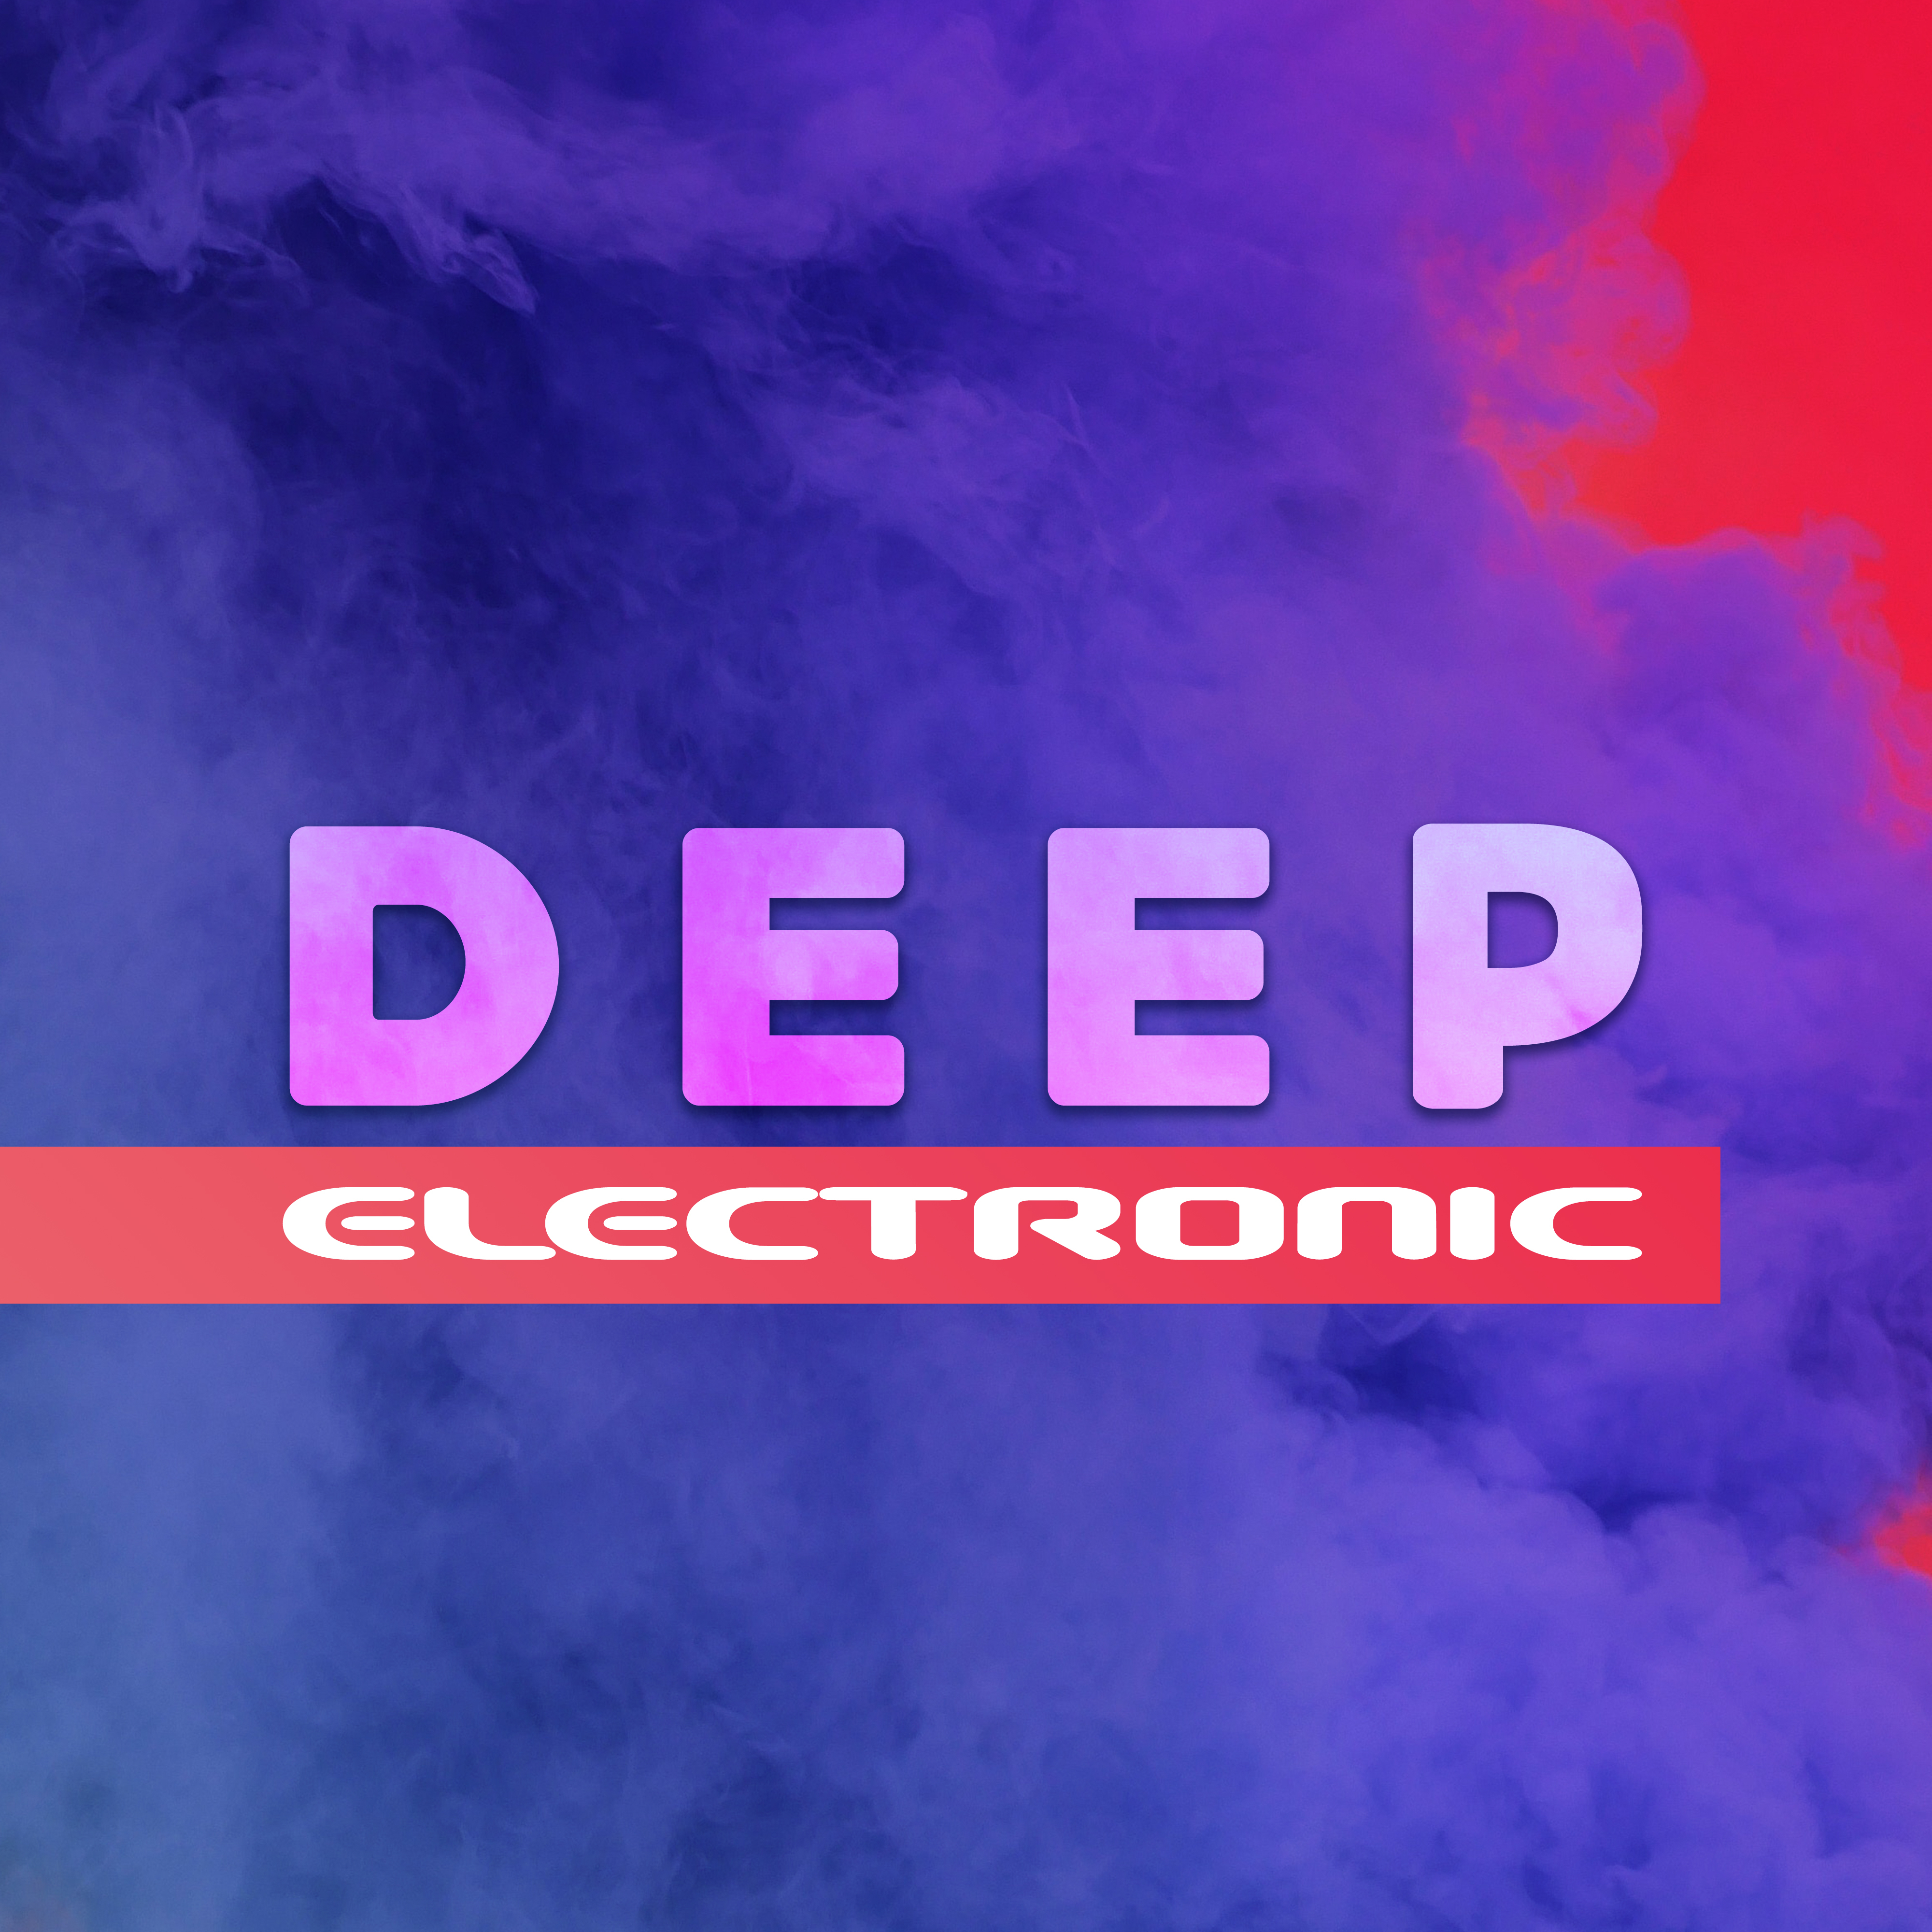 Deep Electronic